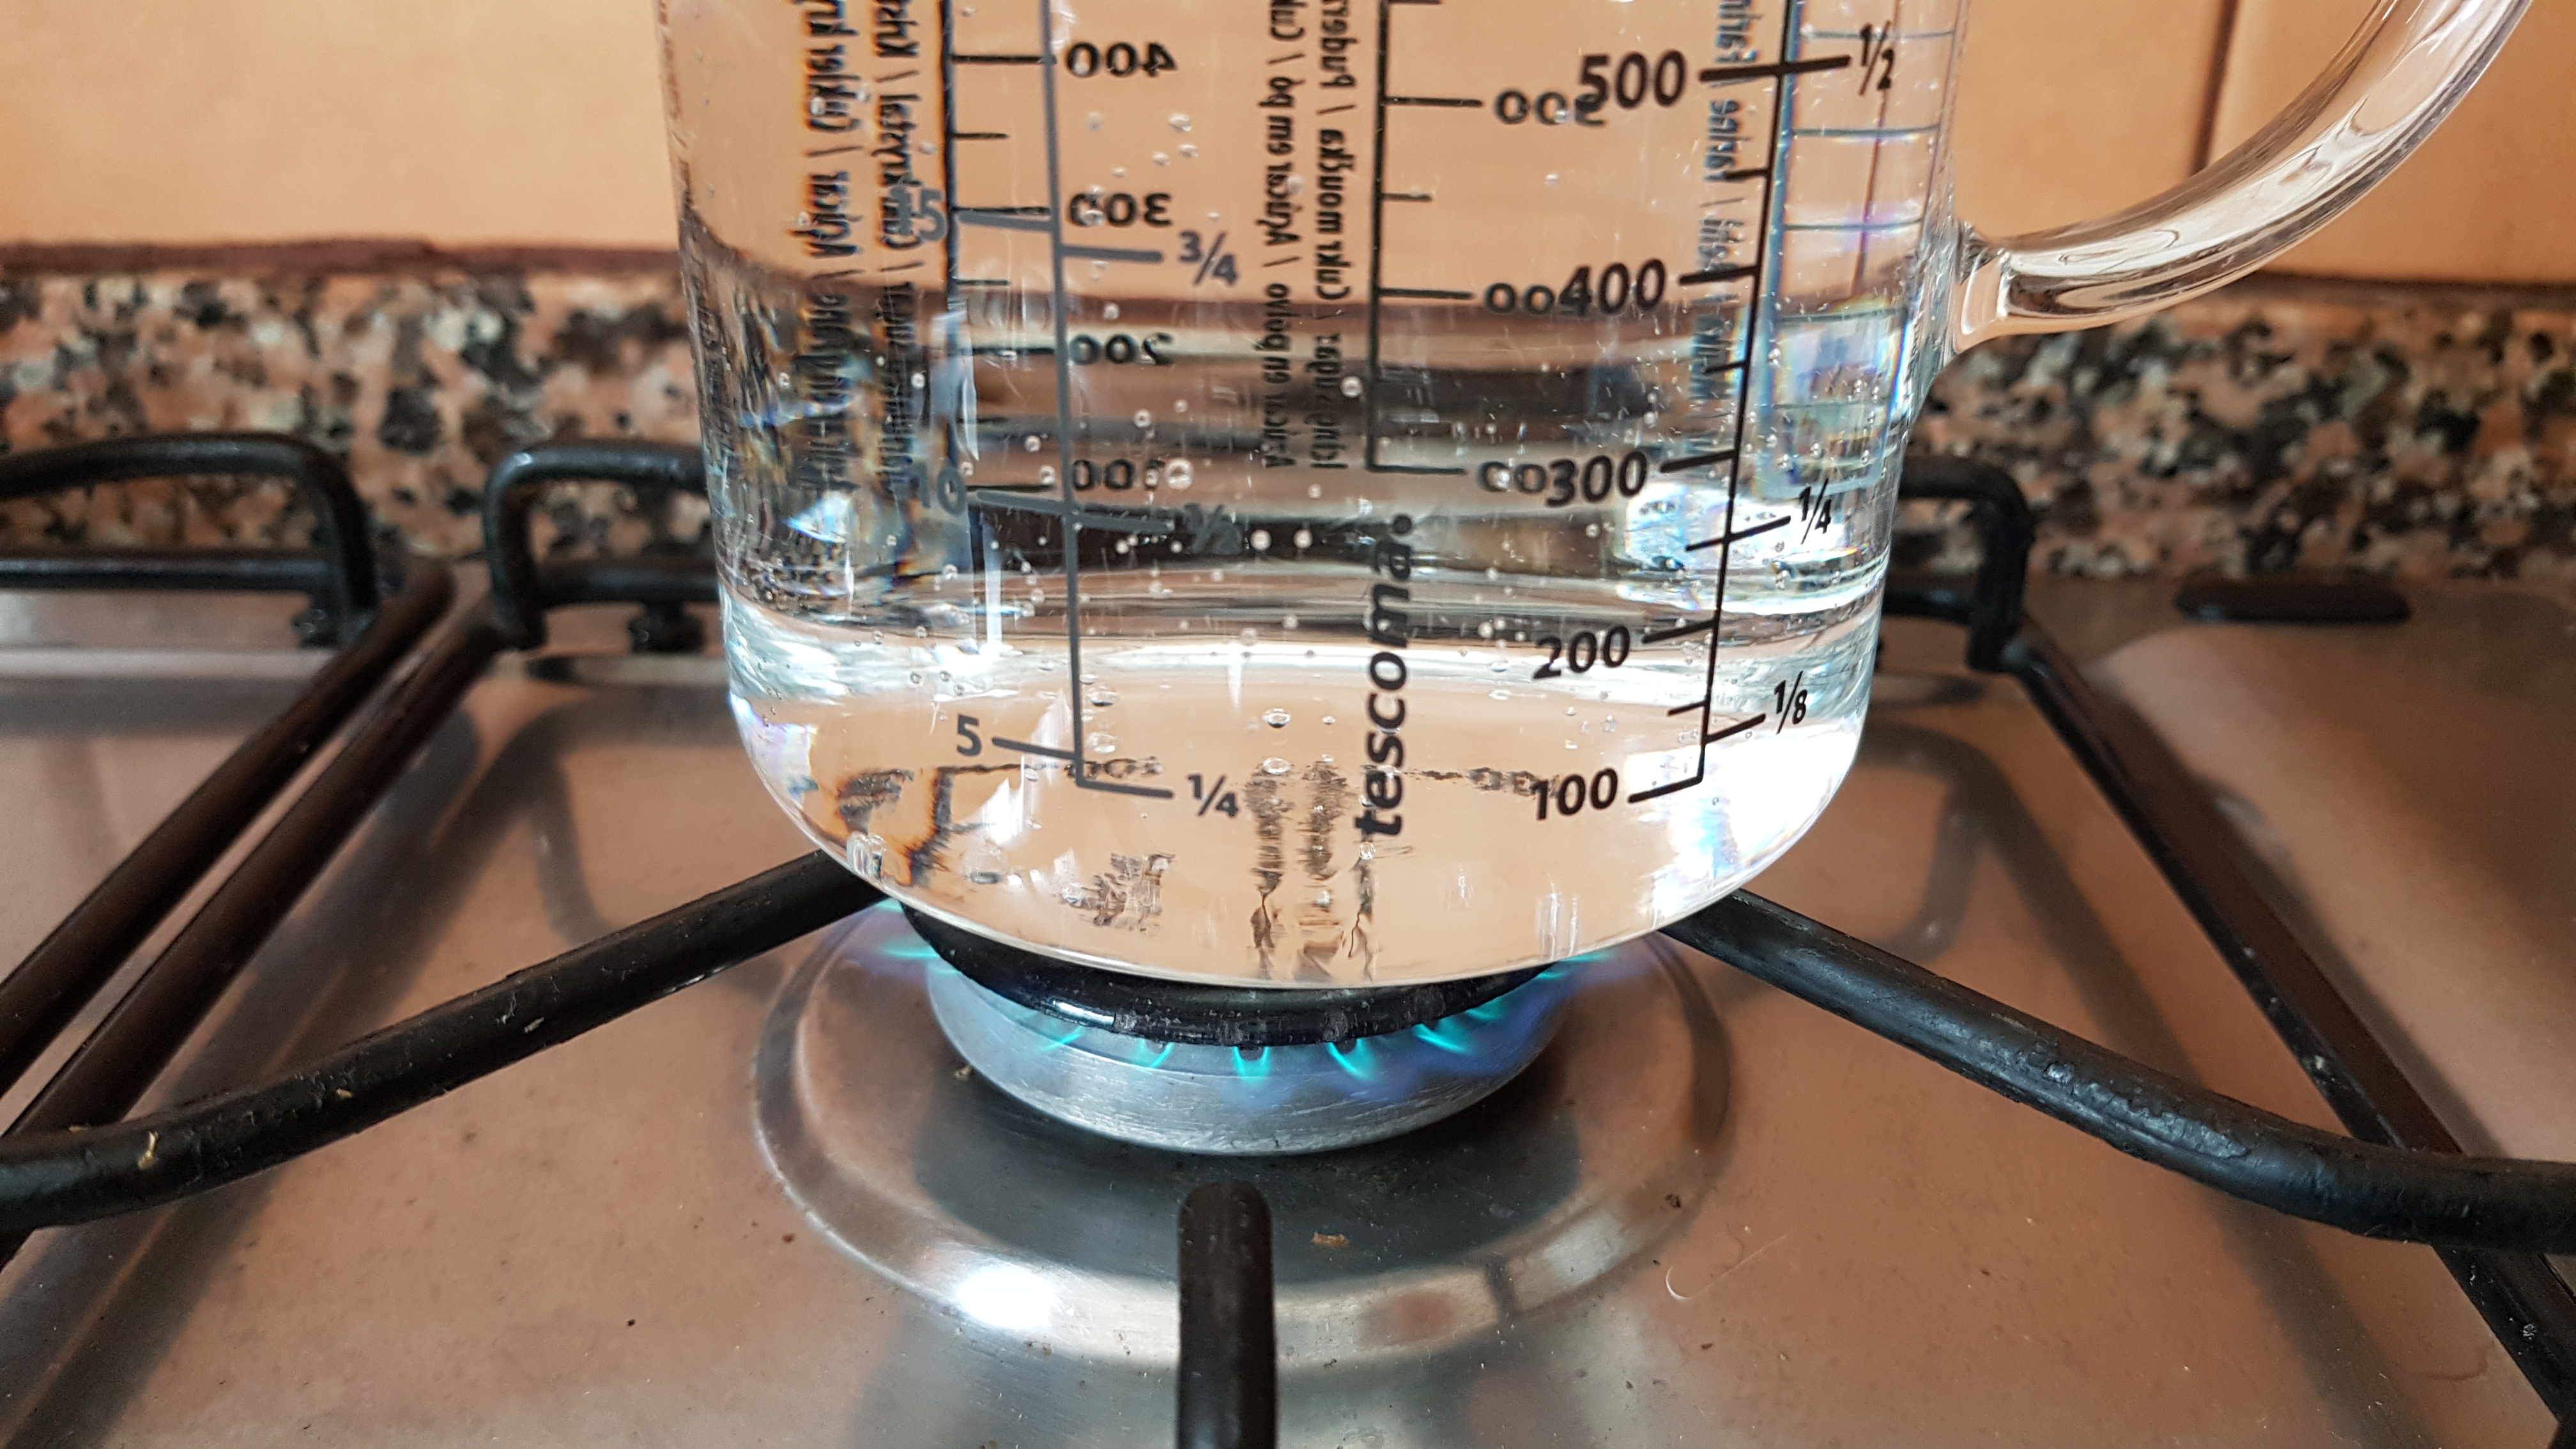 Glas-Messbecher, hitzebeständiges Borosilikatglas